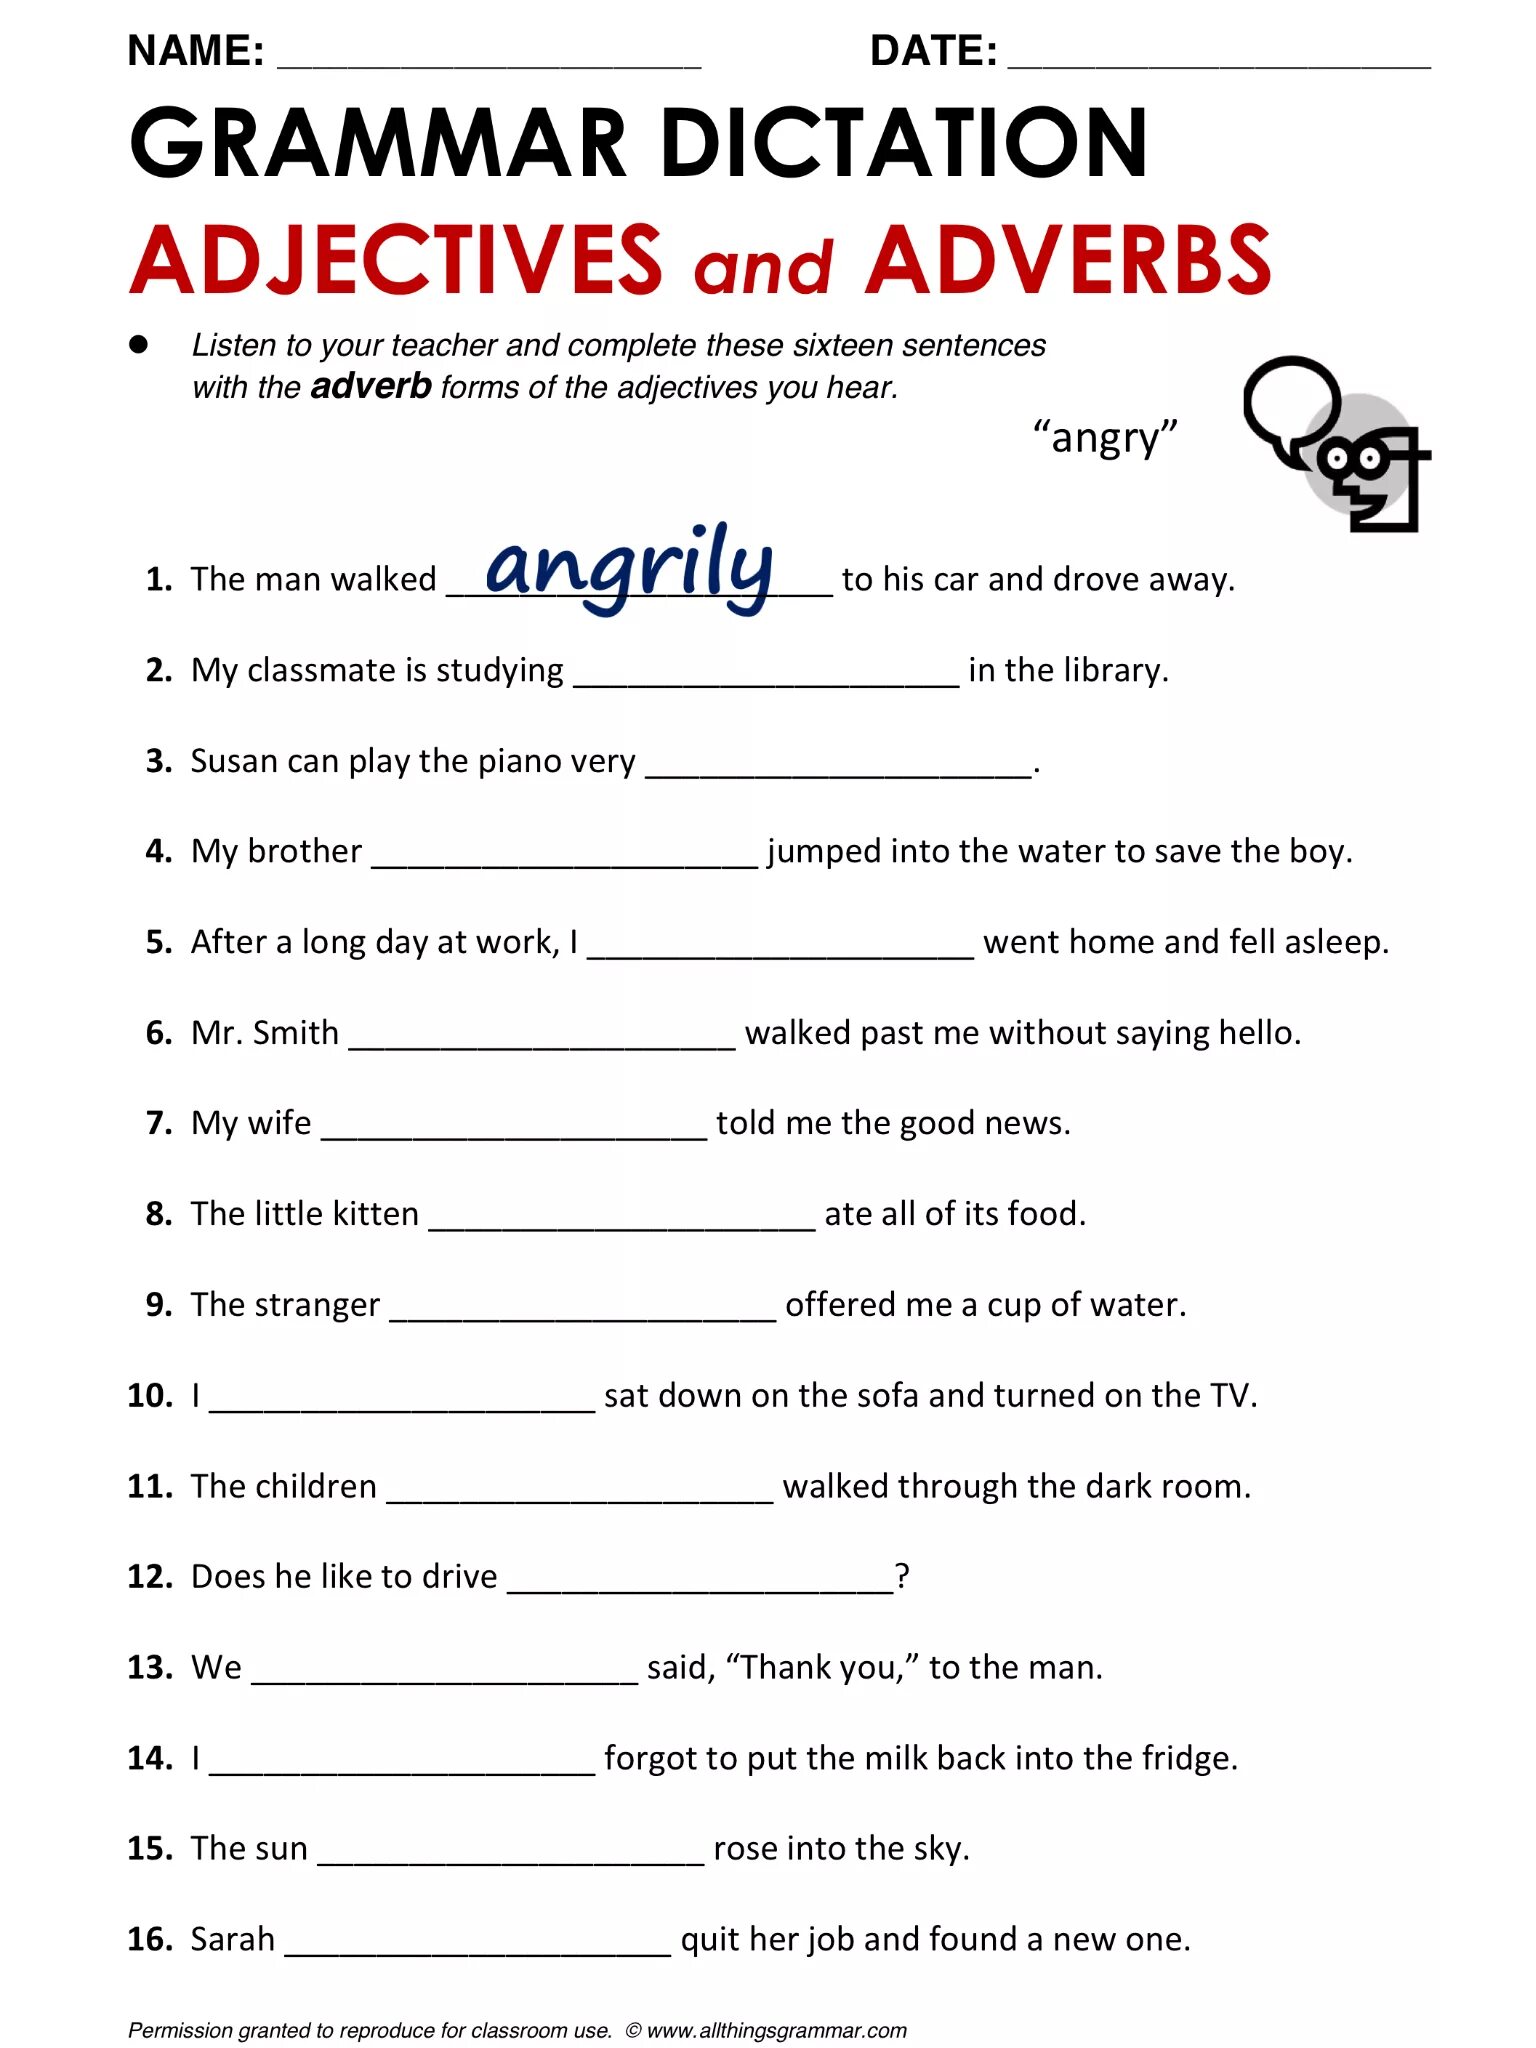 Adverb pdf. Наречия в английском языке Worksheets. Adjectives and adverbs Worksheets. Наречия в английском языке упражнения. Grammar exercises прилагательное.